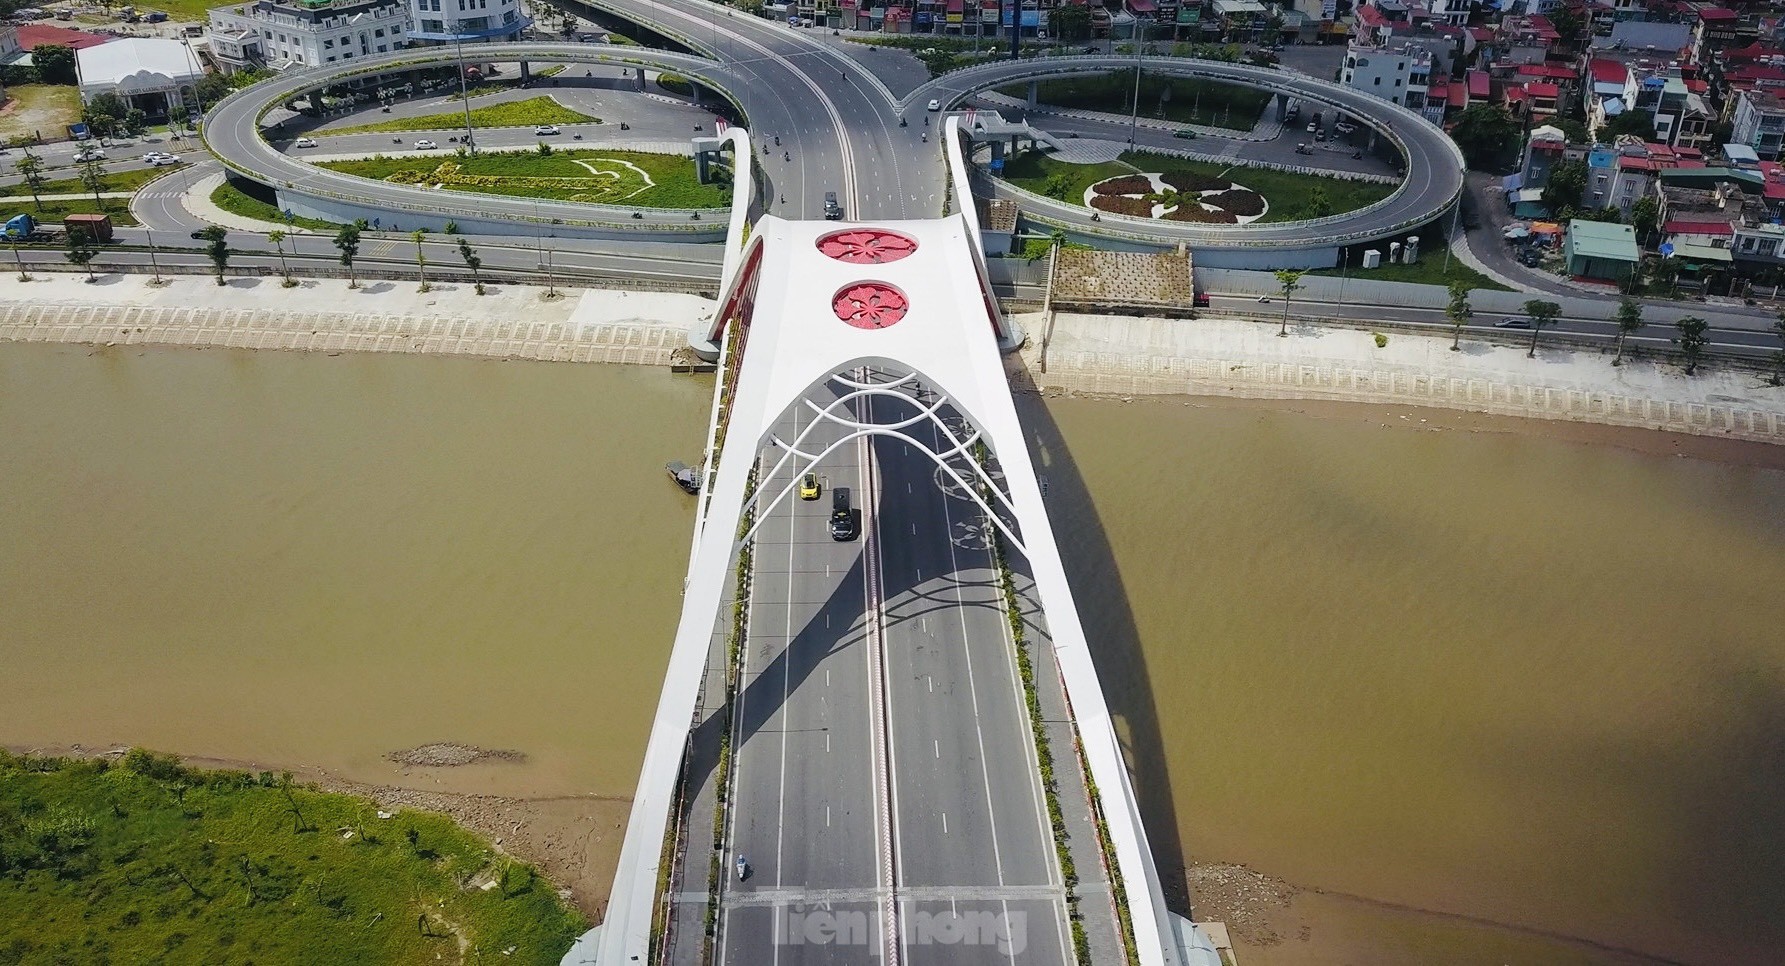 Ấn tượng với vẻ đẹp của hai cây cầu biểu tượng của TP Hải Phòng - Ảnh 8.